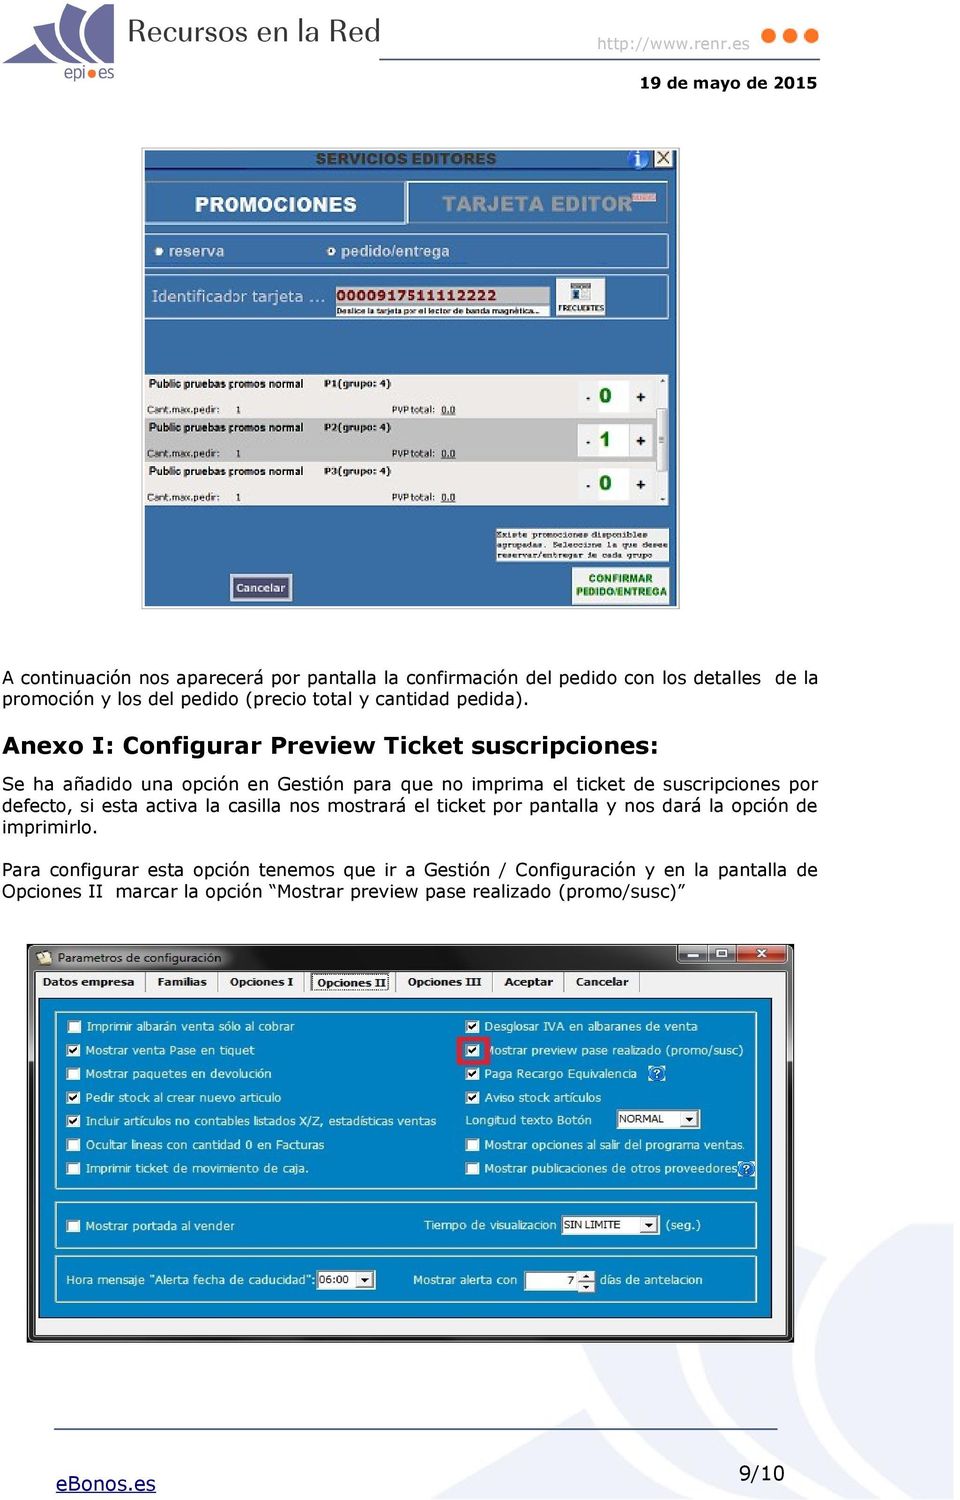 Anexo I: Configurar Preview Ticket suscripciones: Se ha añadido una opción en Gestión para que no imprima el ticket de suscripciones por